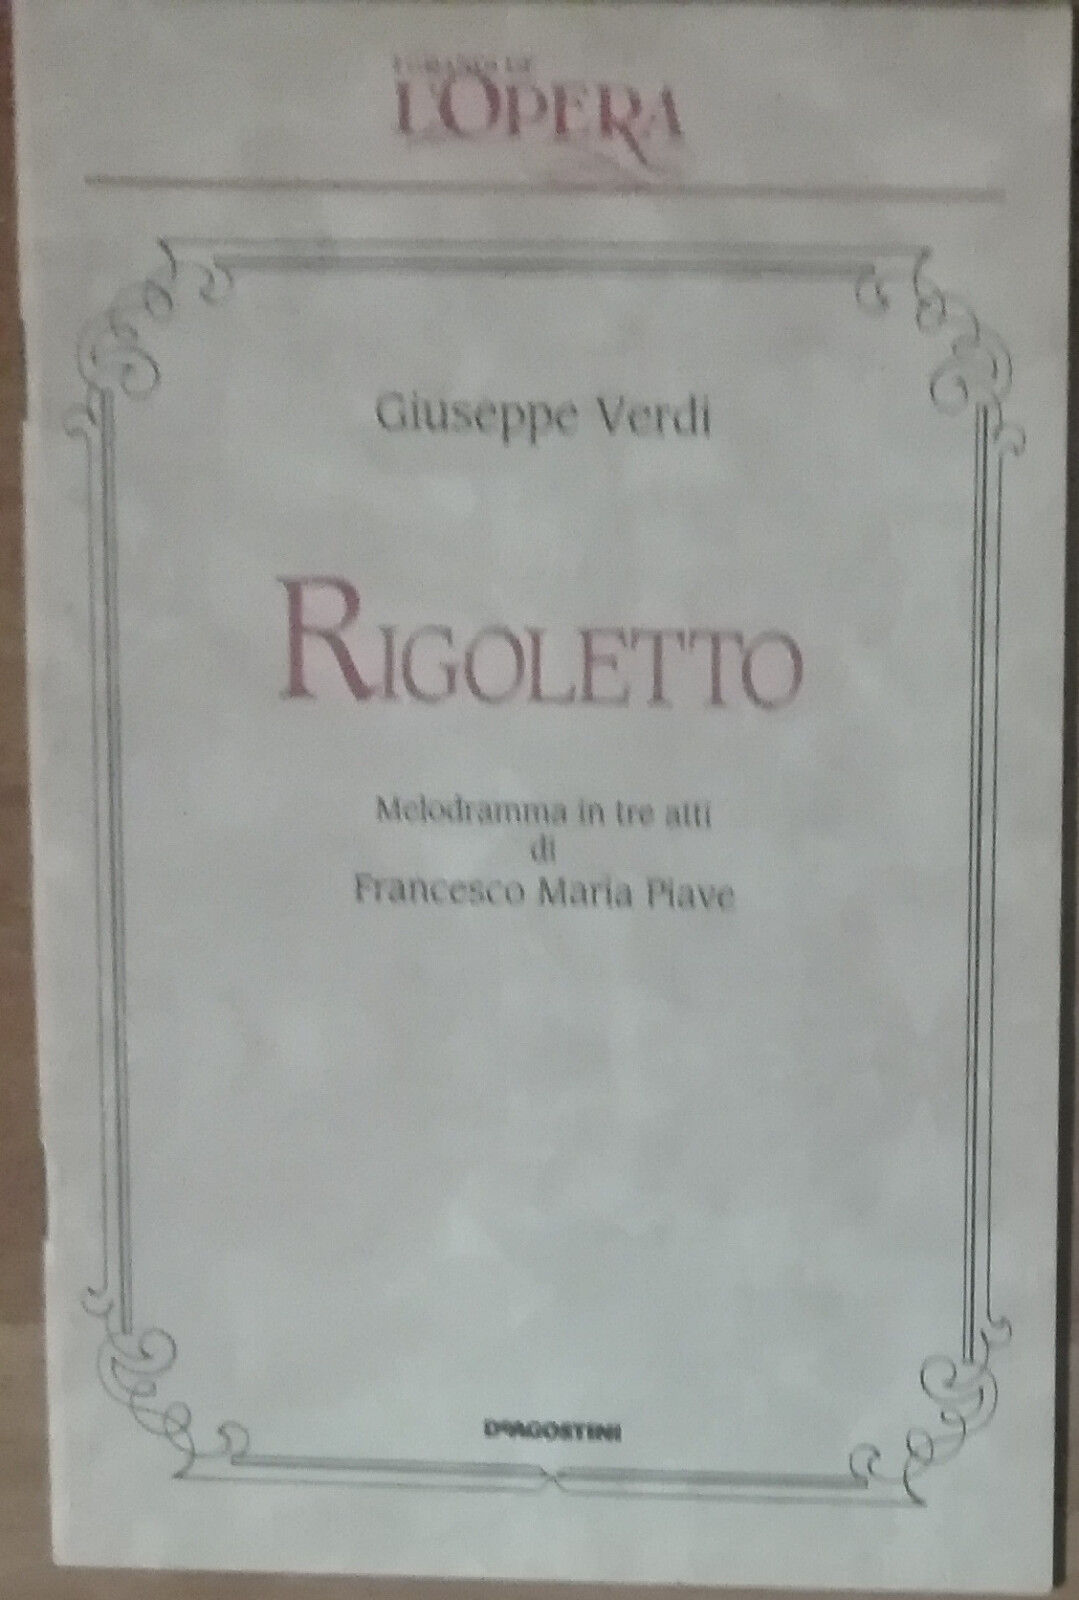 Rigoletto - Giuseppe Verdi - De Agostini,1989 - A